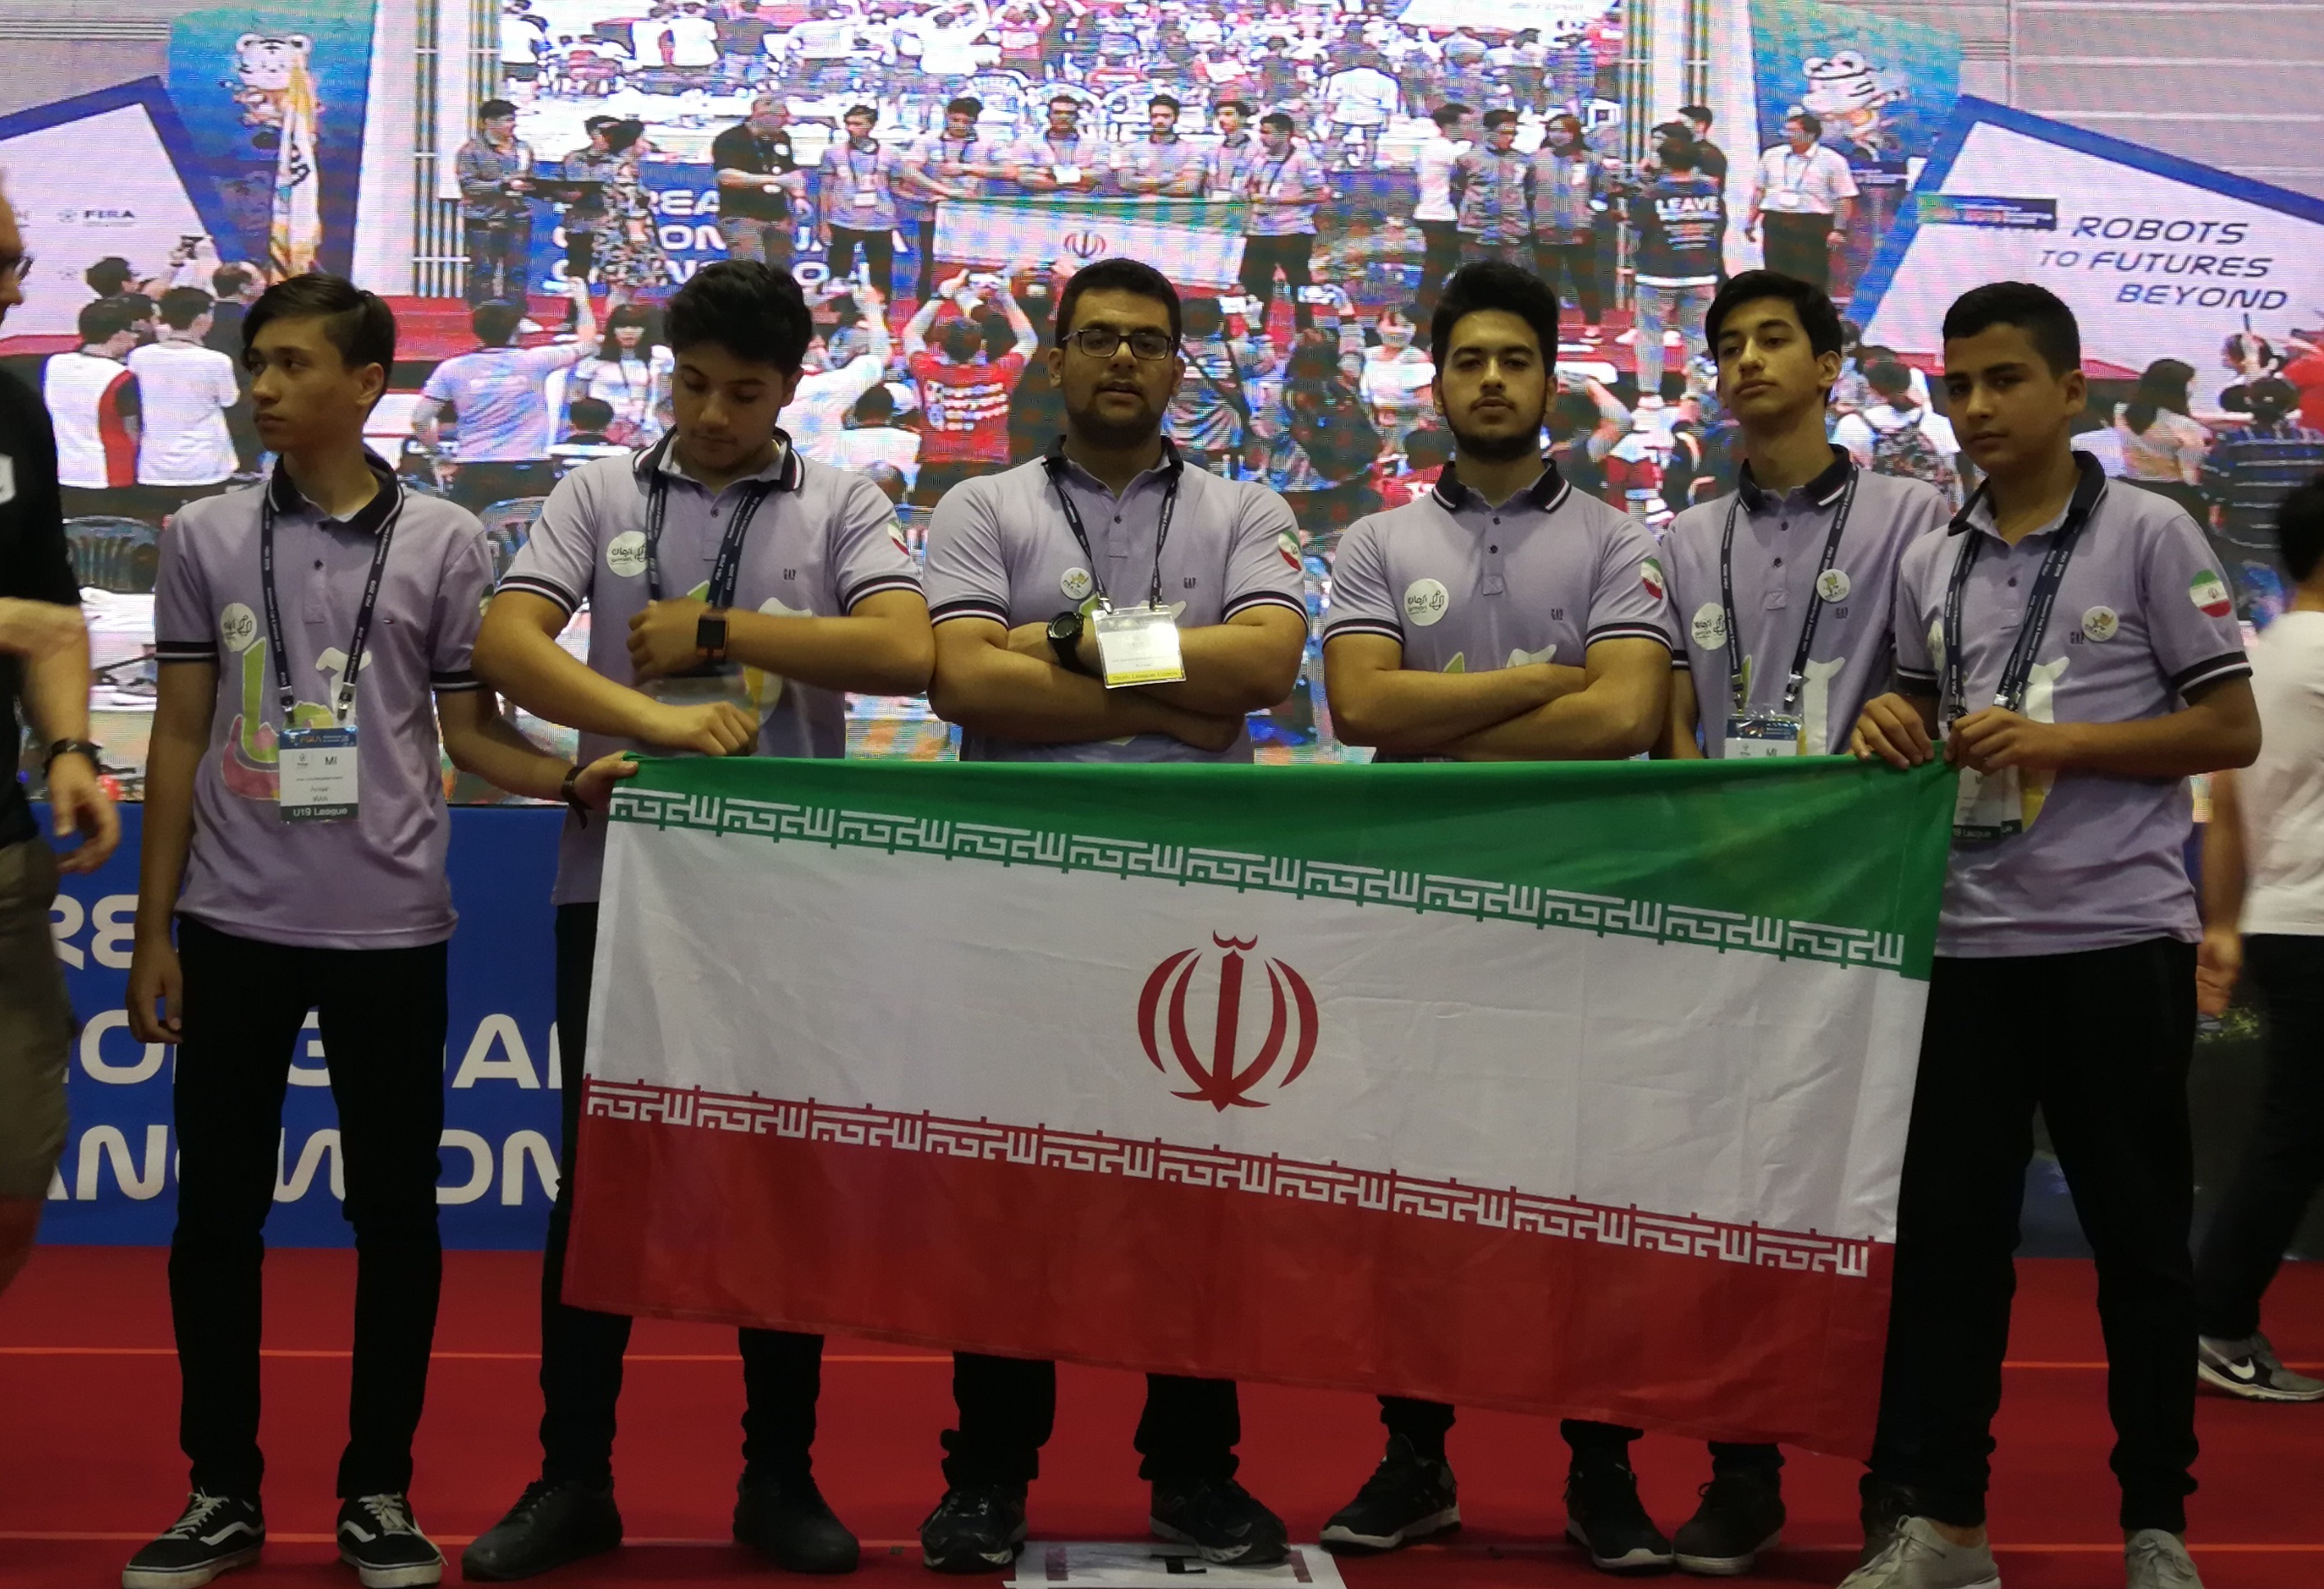 افتخار آفرینی تیم رباتیک ایران در روز اول اعلام نتایج/ ۳ اولی و ۲ دومی سهم کشورمان از این دوره از مسابقات